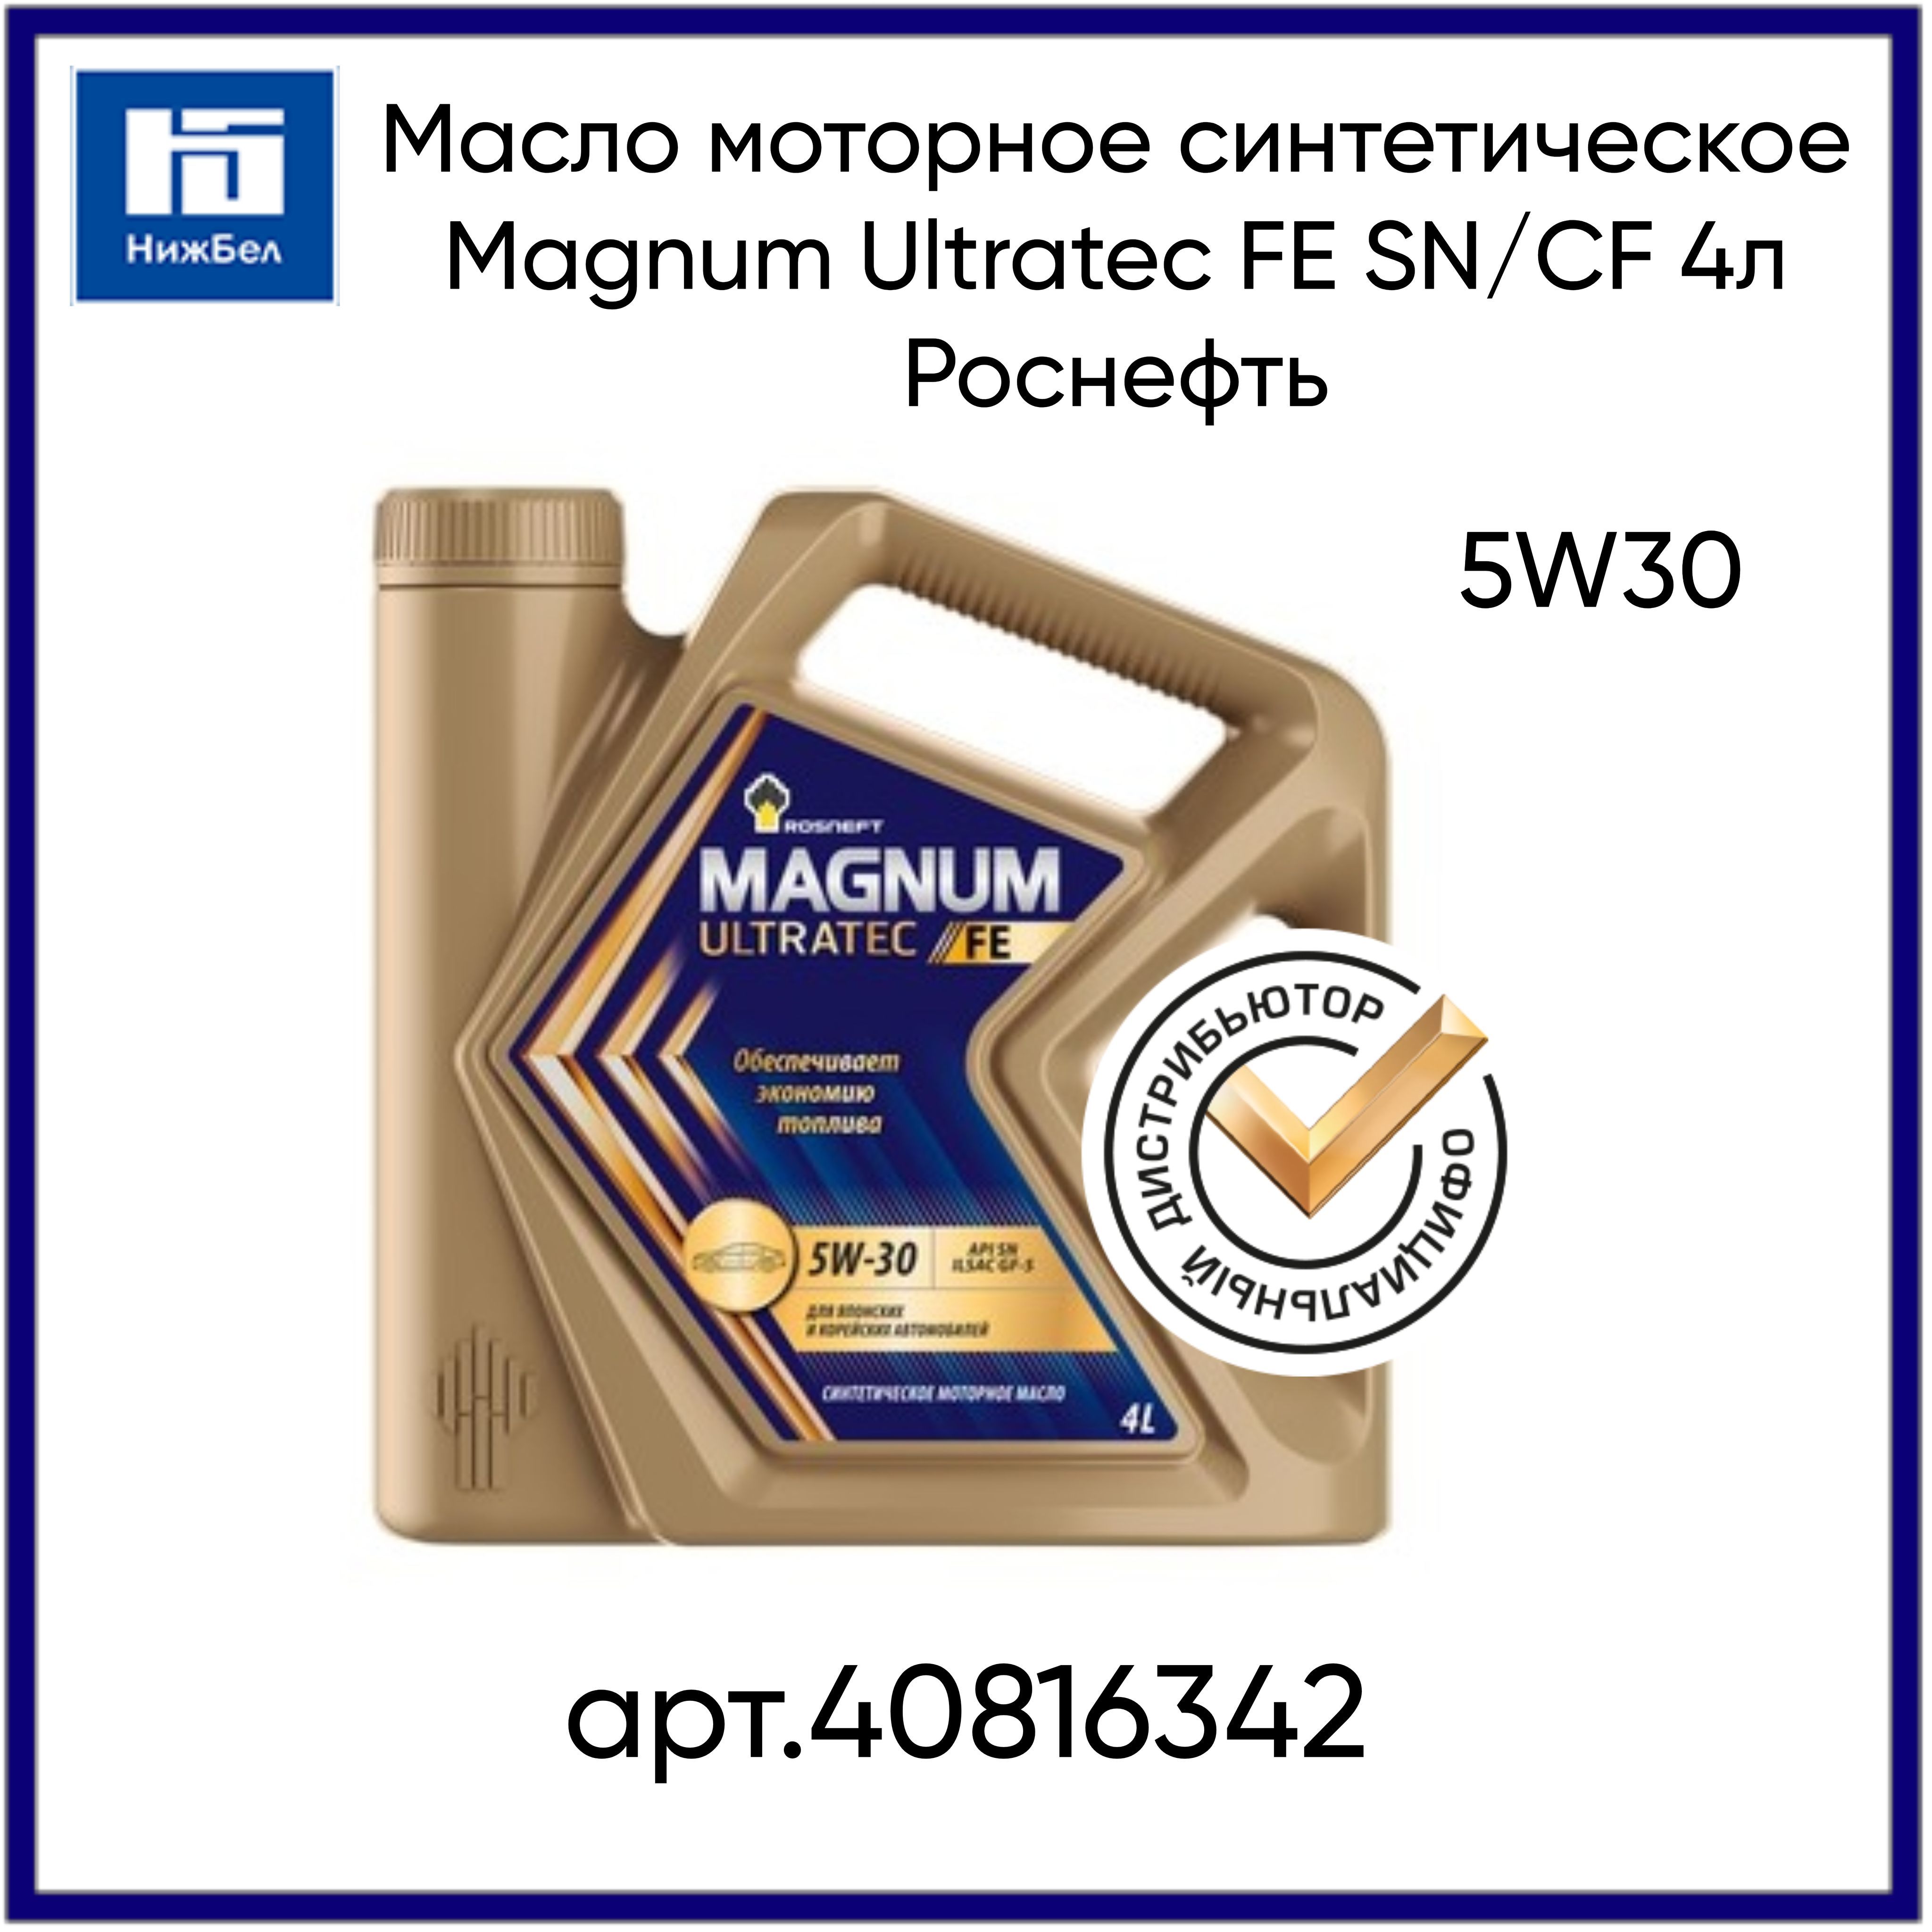 Масло моторное магнум ультратек отзывы. Rosneft Magnum Ultratec 5w-30 синтетическое 4 л. Магнум Ультратек Фе 5w30.